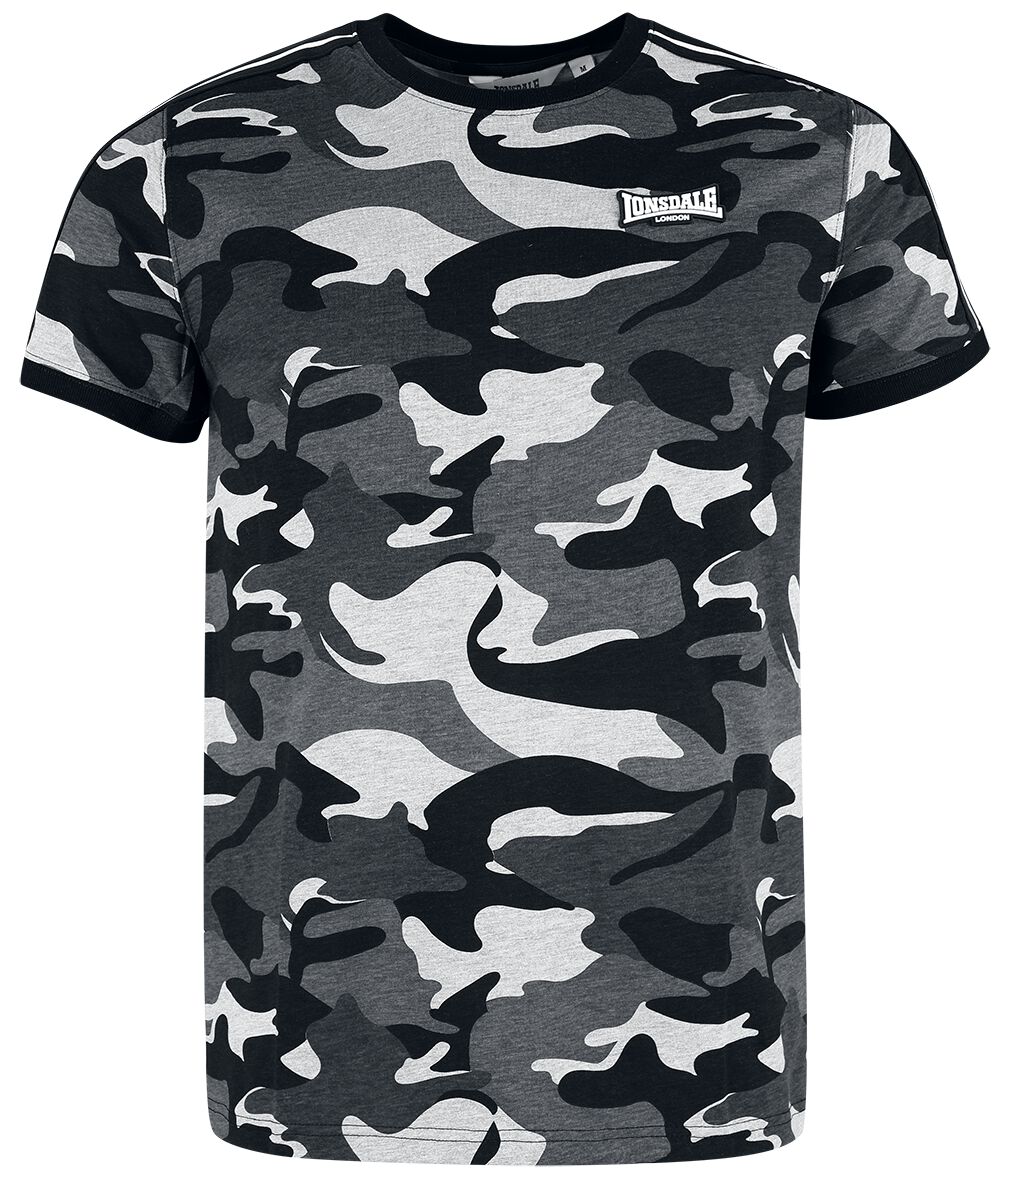 Lonsdale London - Camouflage/Flecktarn T-Shirt - GUNNISTA - S bis XXL - für Männer - Größe M - graucamo